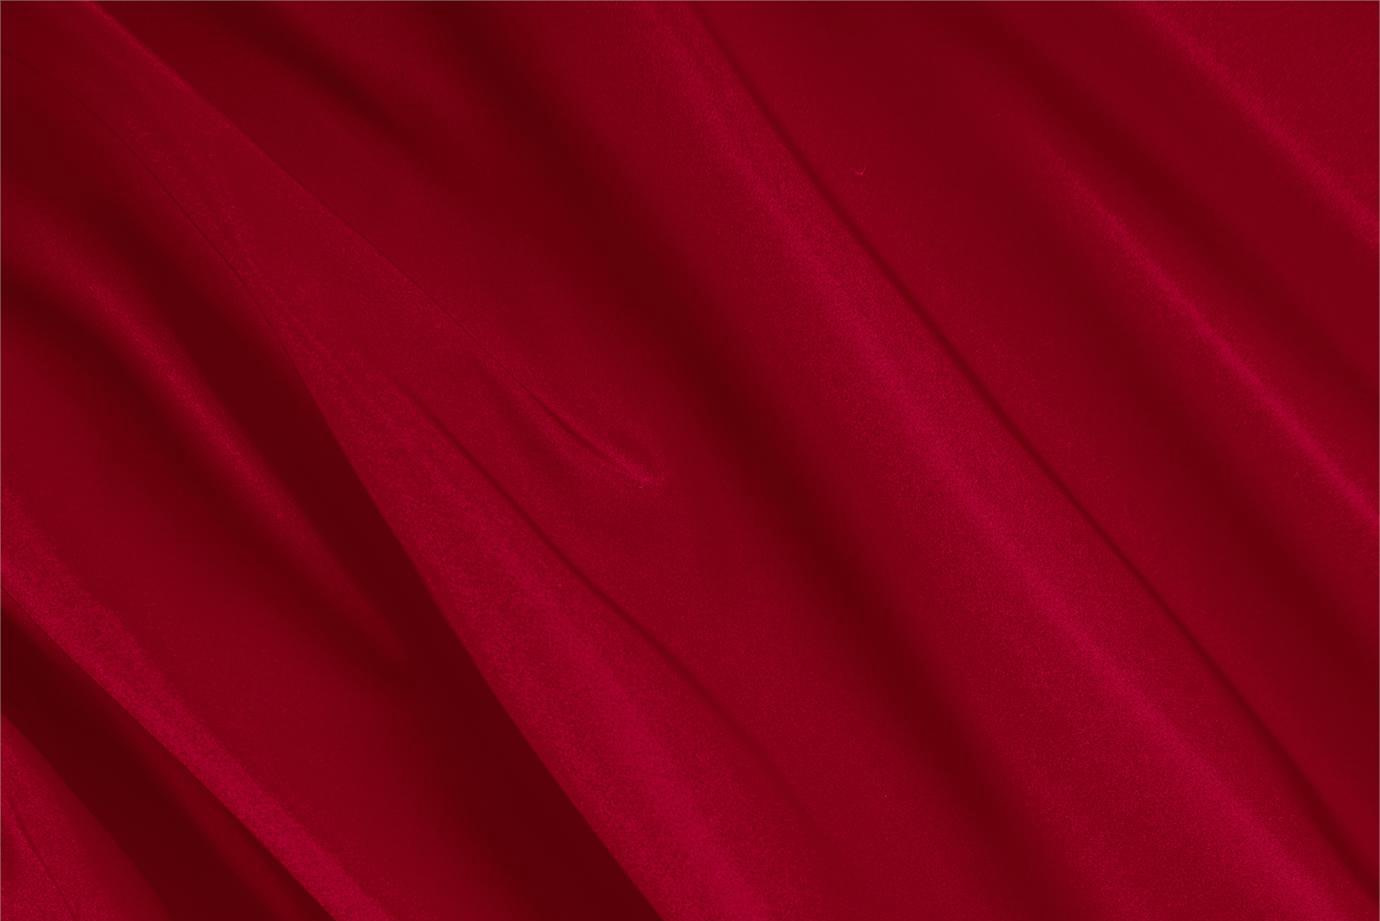 Tissu Couture Radzemire Rouge rubis en Soie UN000315